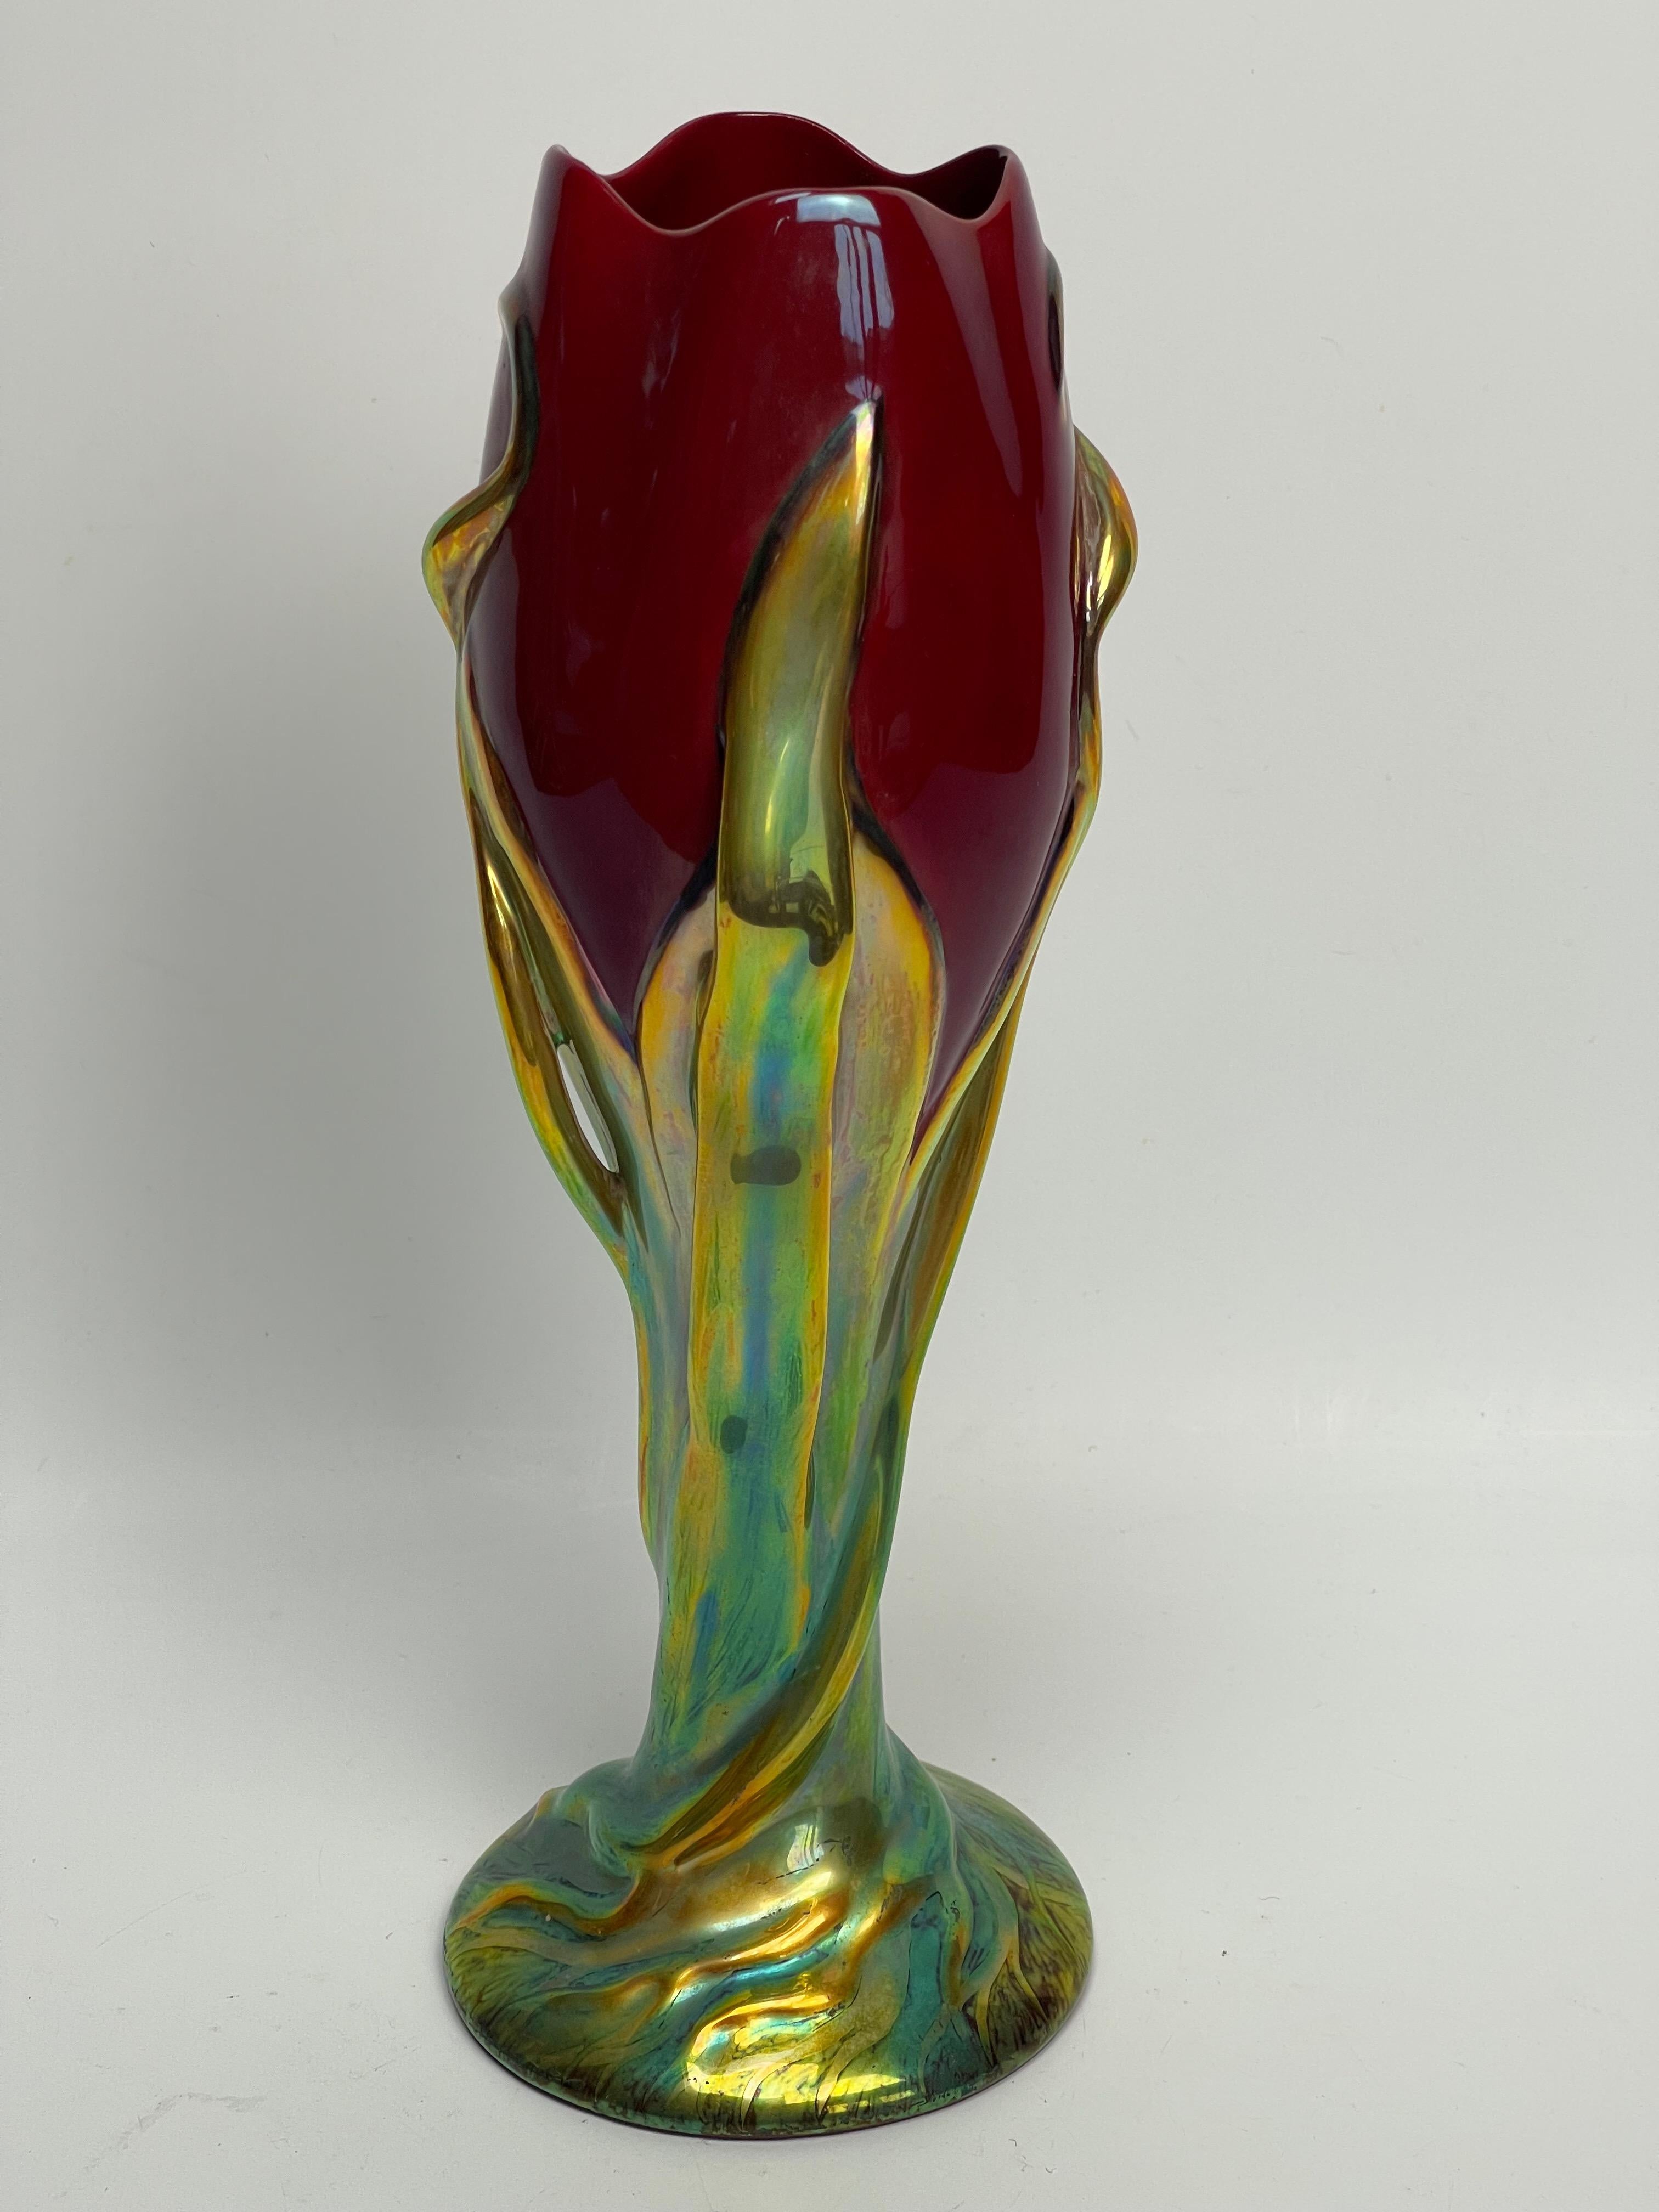 Vase tulipe de l'usine de Zsolnay. Réédition des années 80 par Mlle Eszter Jorok.
Numéroté 5495.
Vase de la série Tulipe de 1899.
Vase en parfait état, à noter un petit défaut de cuisson à l'intérieur d'une des feuilles en application. Voir sur